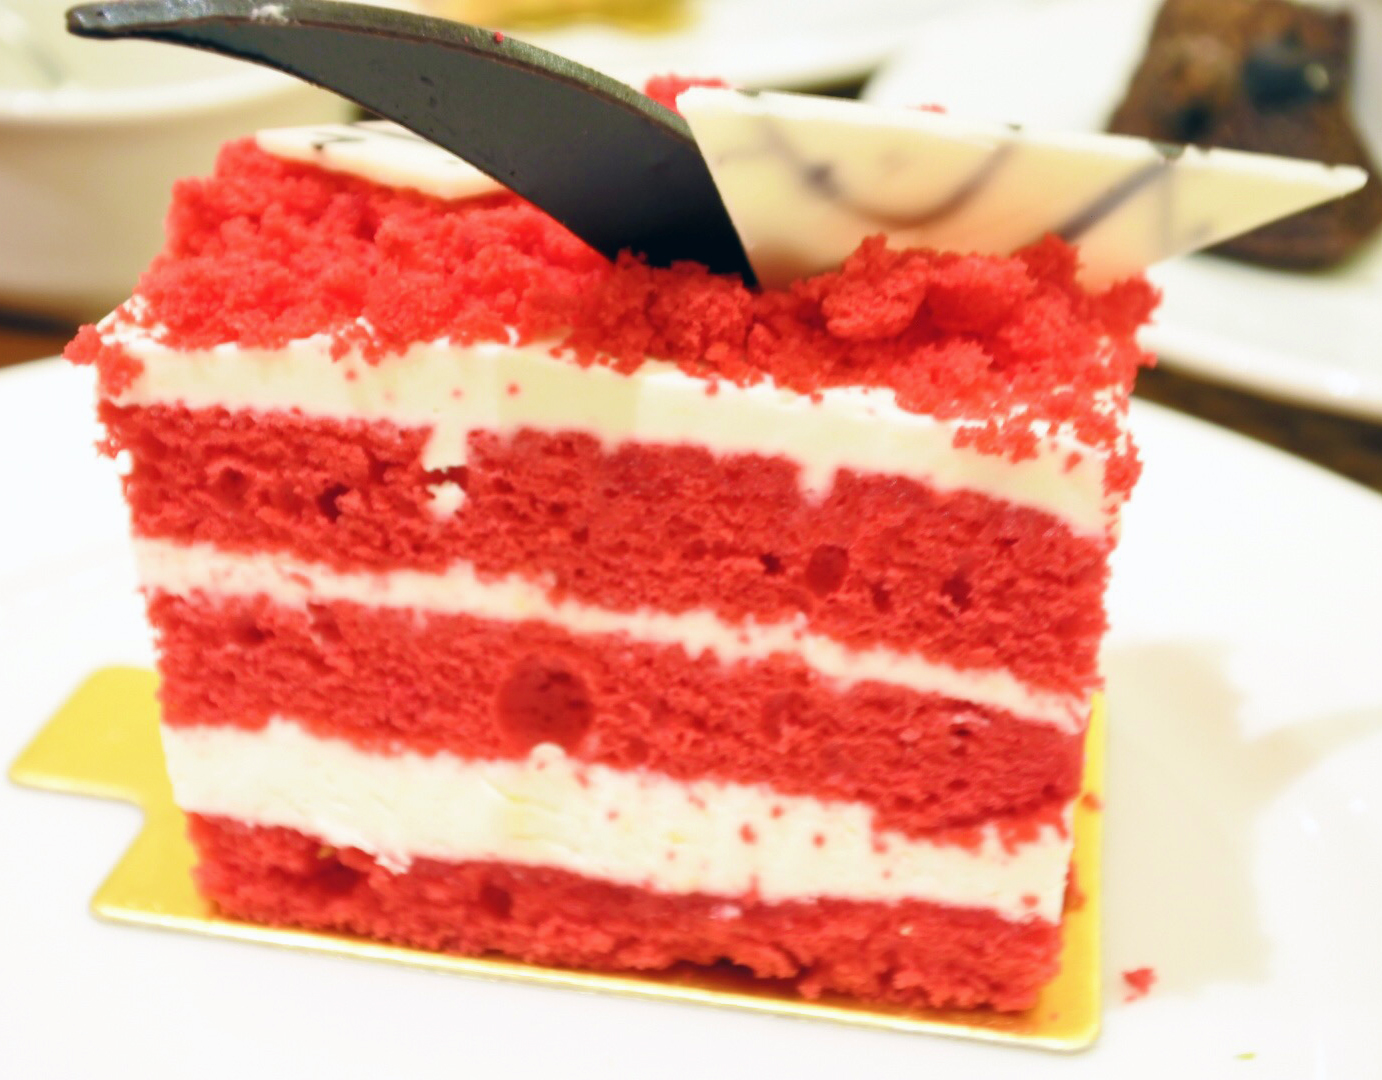 Gargantuan red velvet cake